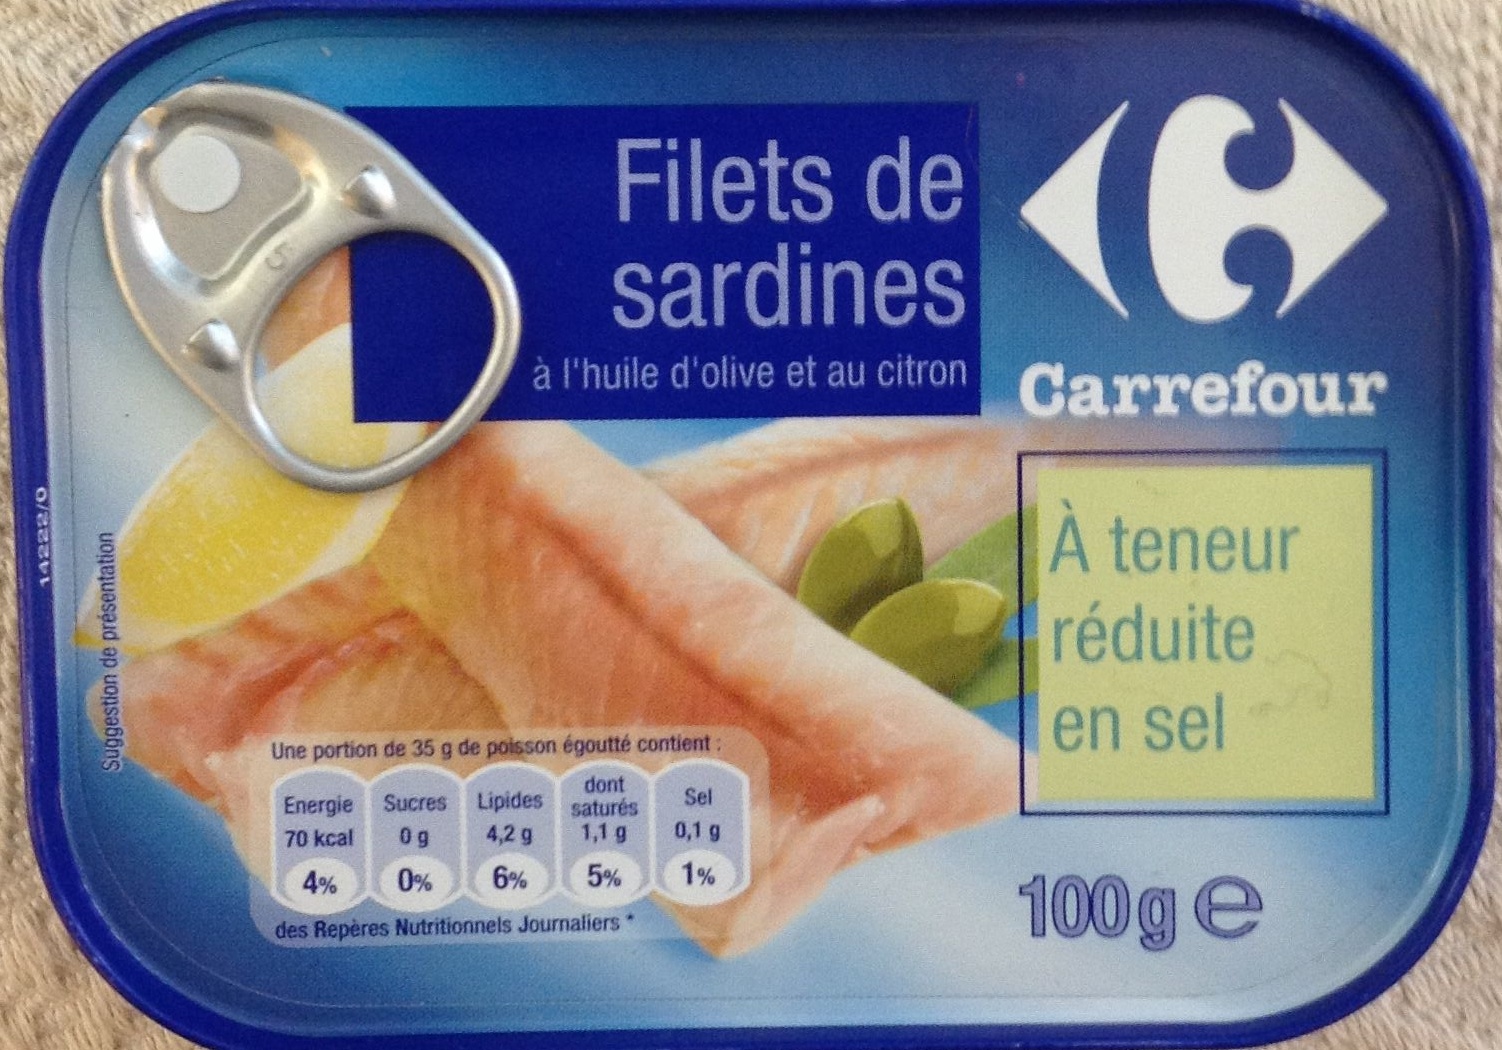 Filets de sardines à huile d'olive et au citron (À teneur réduite en sel) - Producto - fr